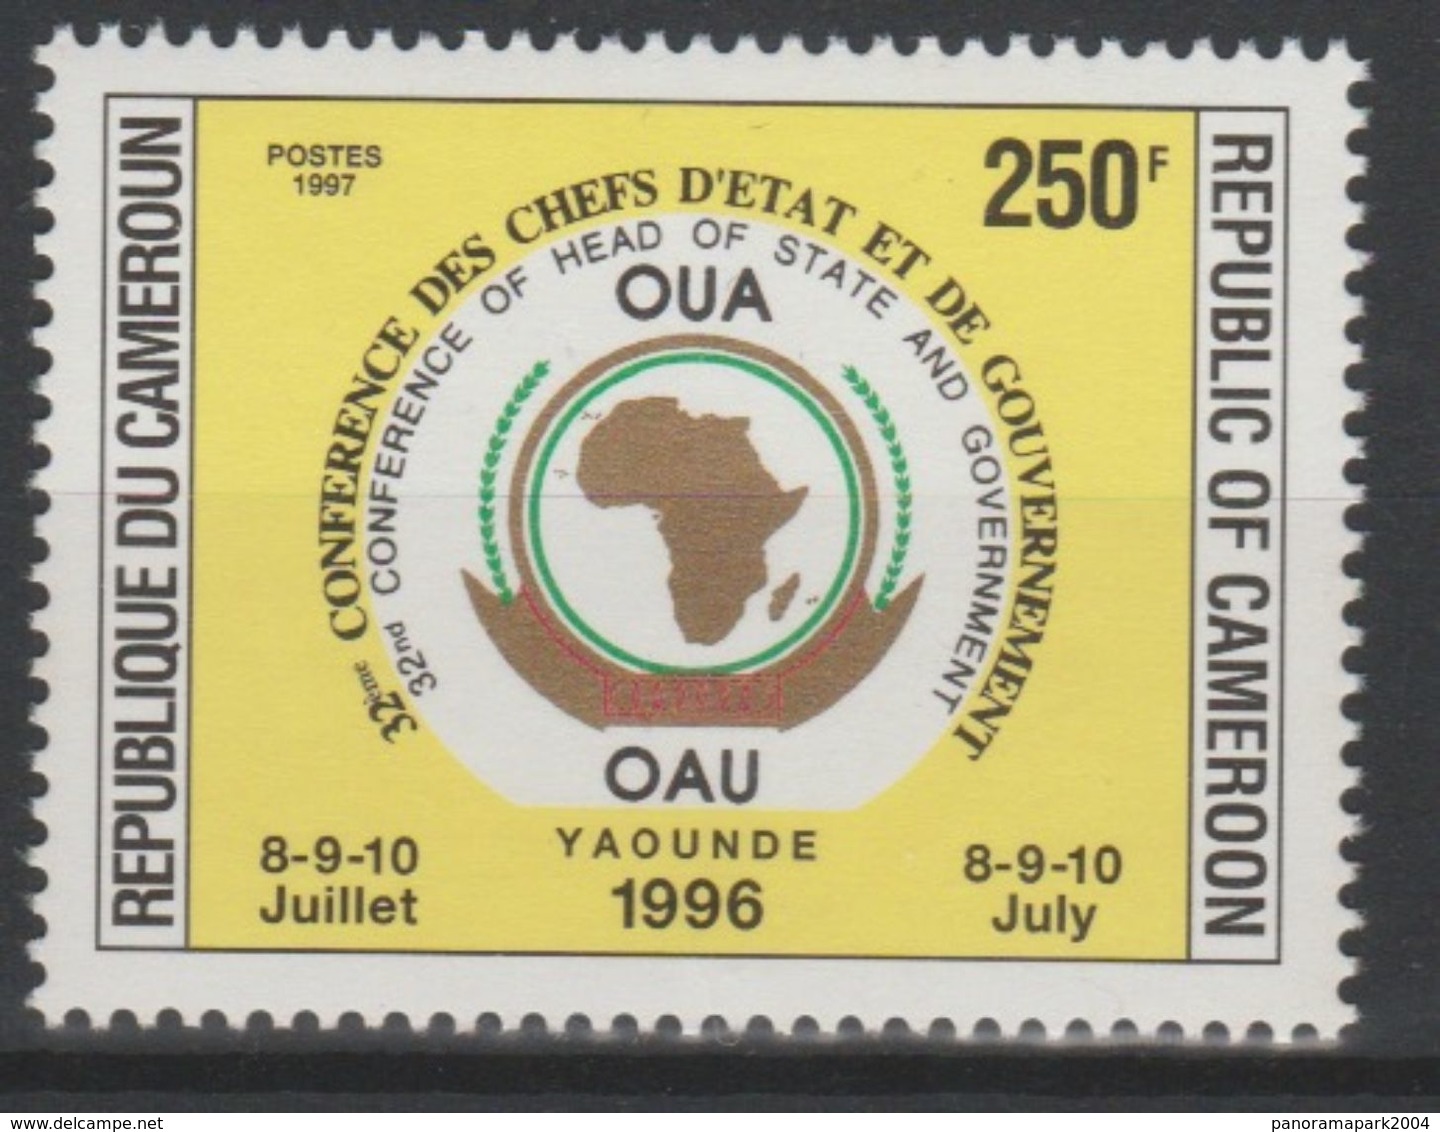 Cameroun Cameroon Kamerun 1997 250F Mi. 1223 OAU OUA Map Landkarte Carte Conférence Chefs D'Etat 8-9-10 Juillet - Cameroon (1960-...)